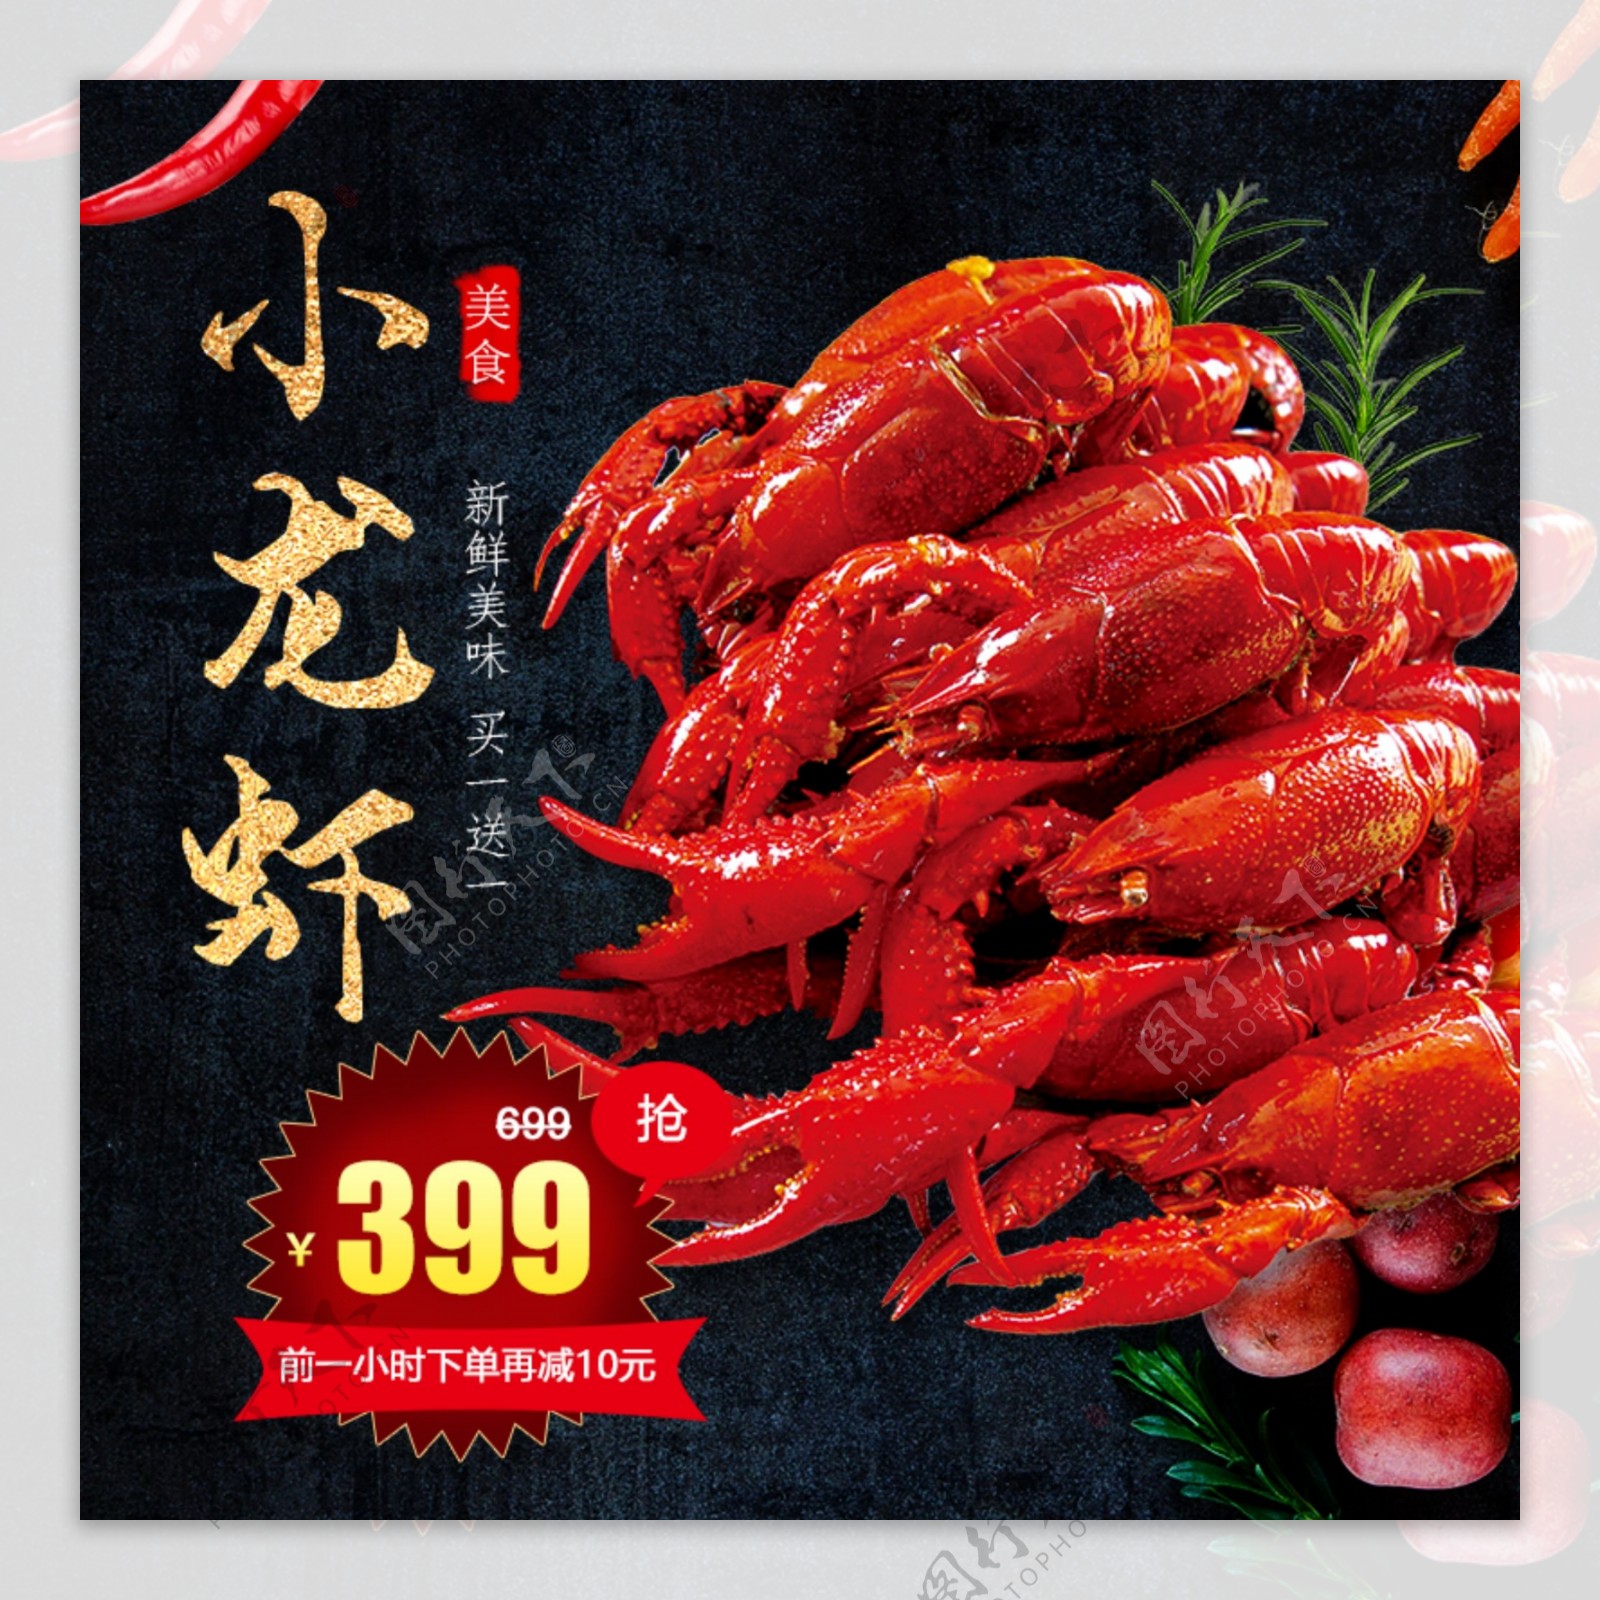 虾主图小龙虾生鲜美味辣椒促销包邮